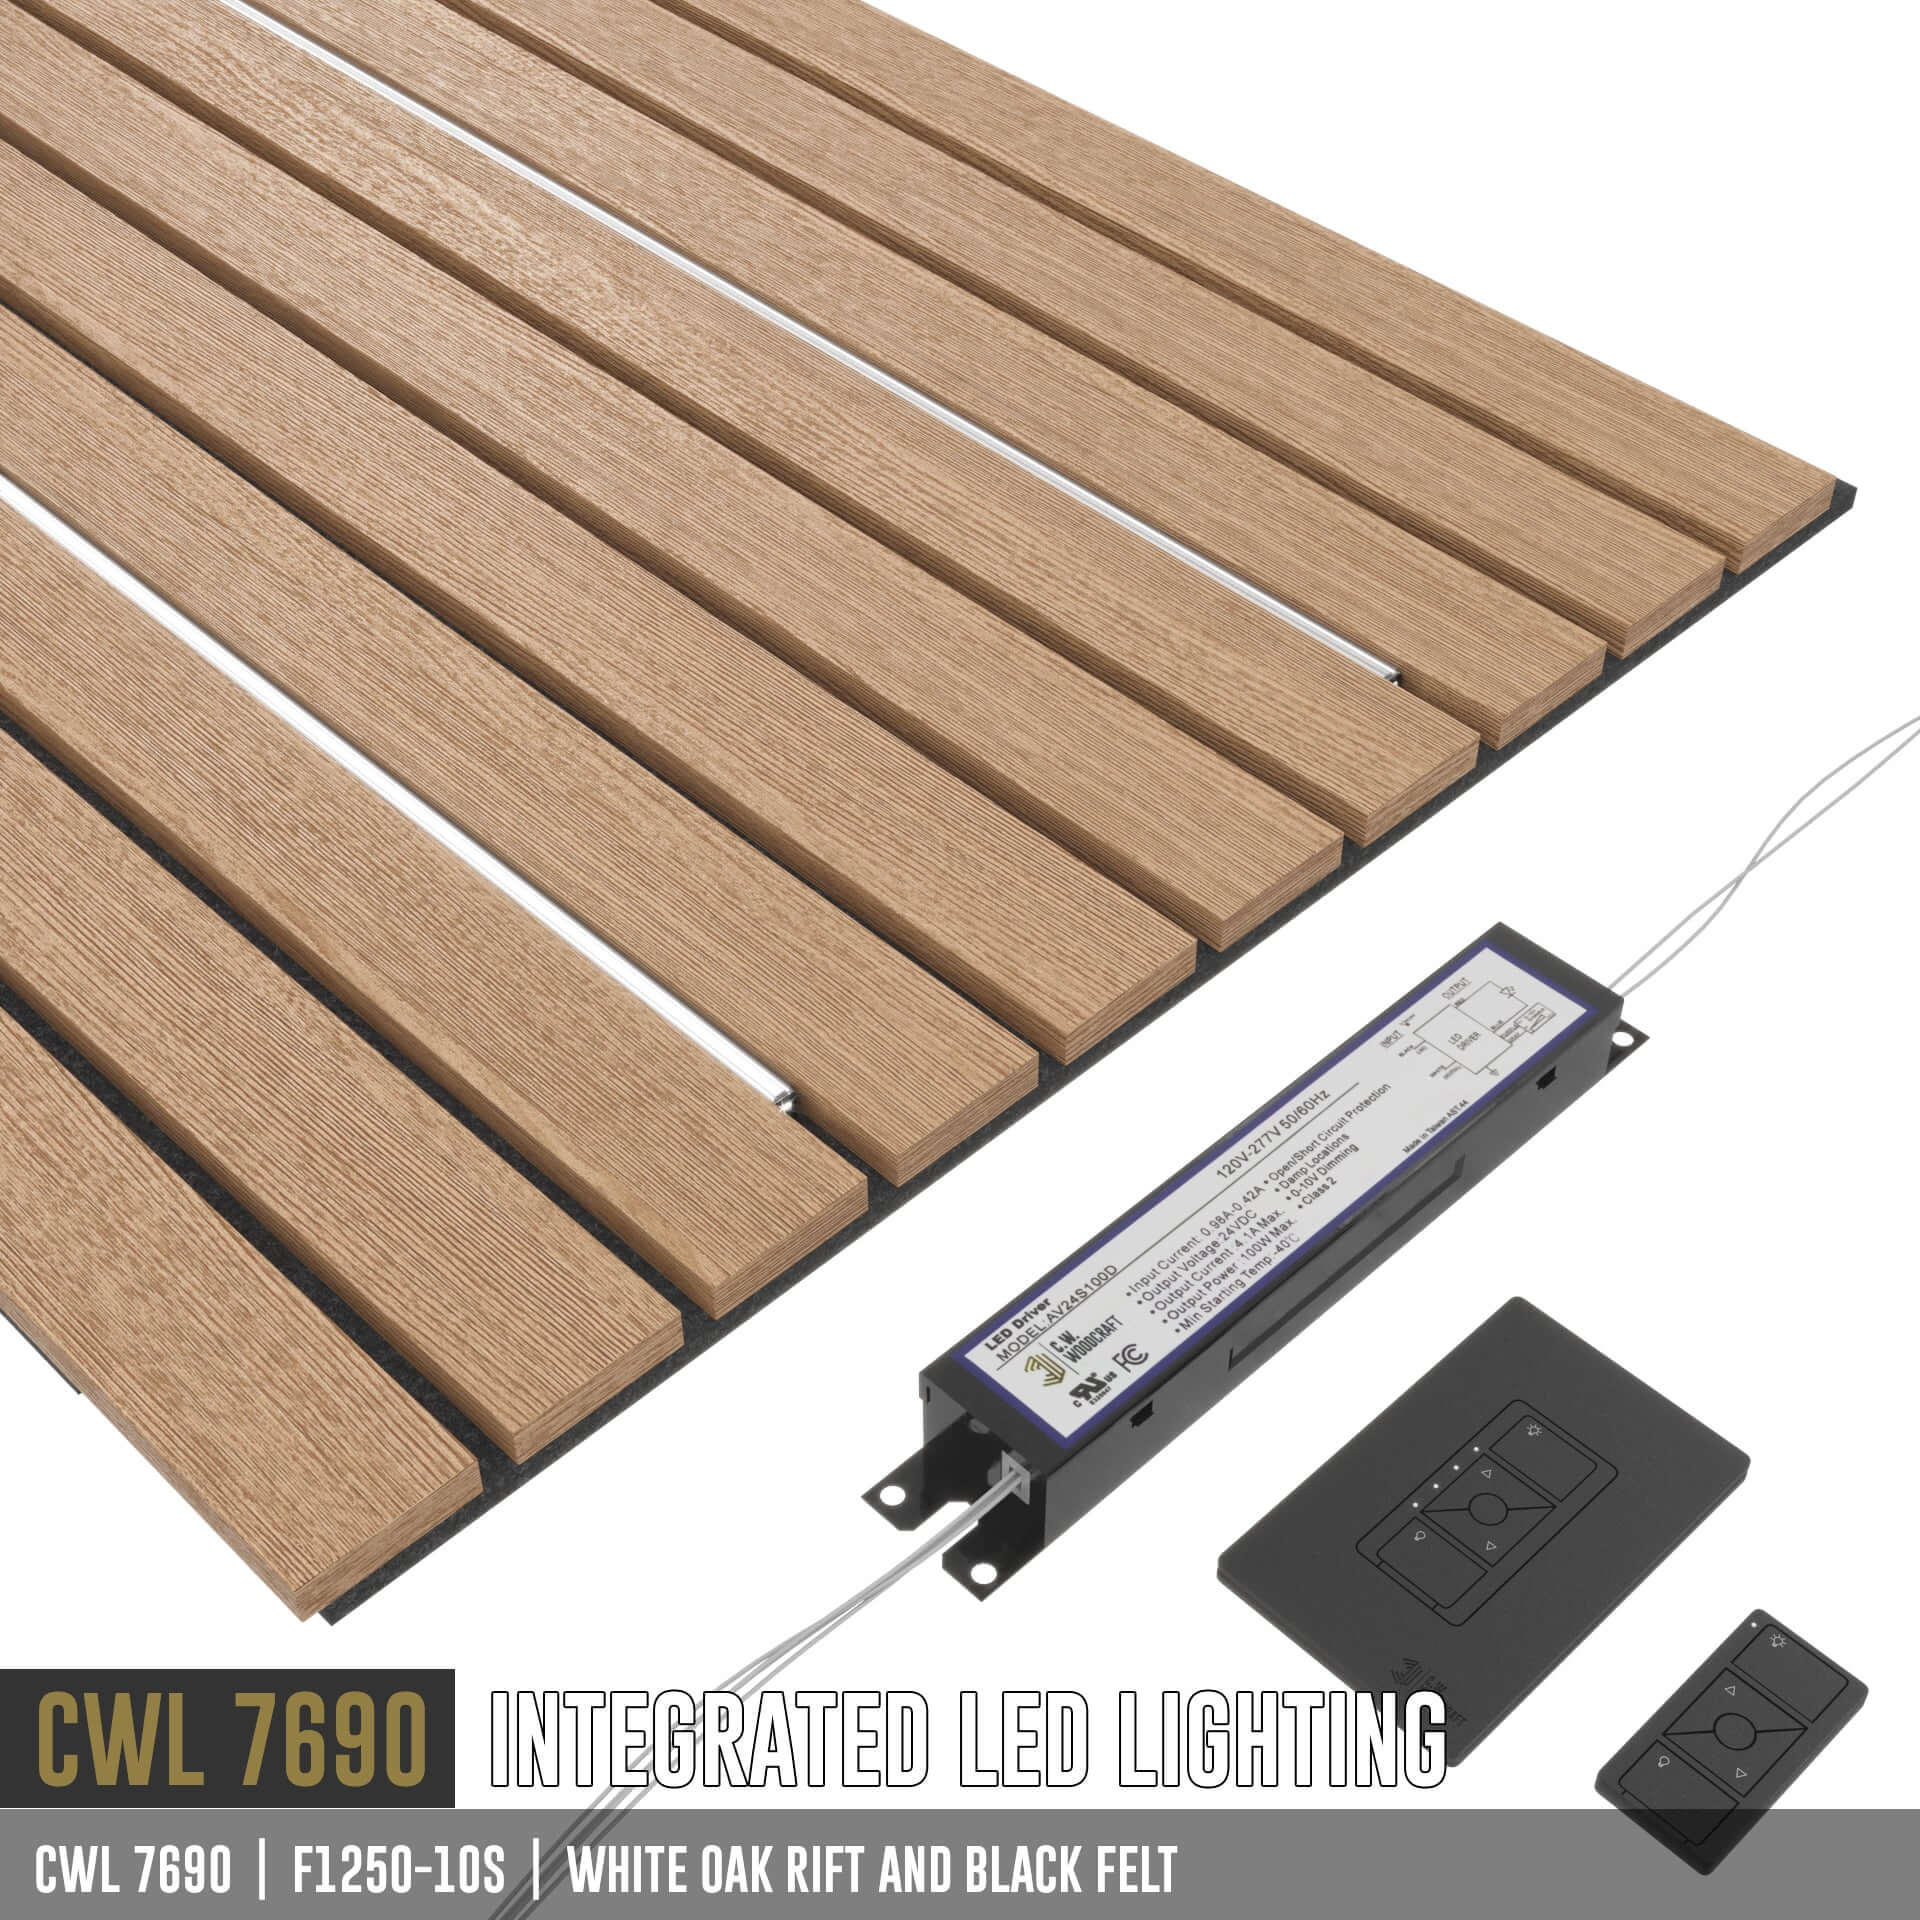 CWL 7690 | LED Lighting for wood panels